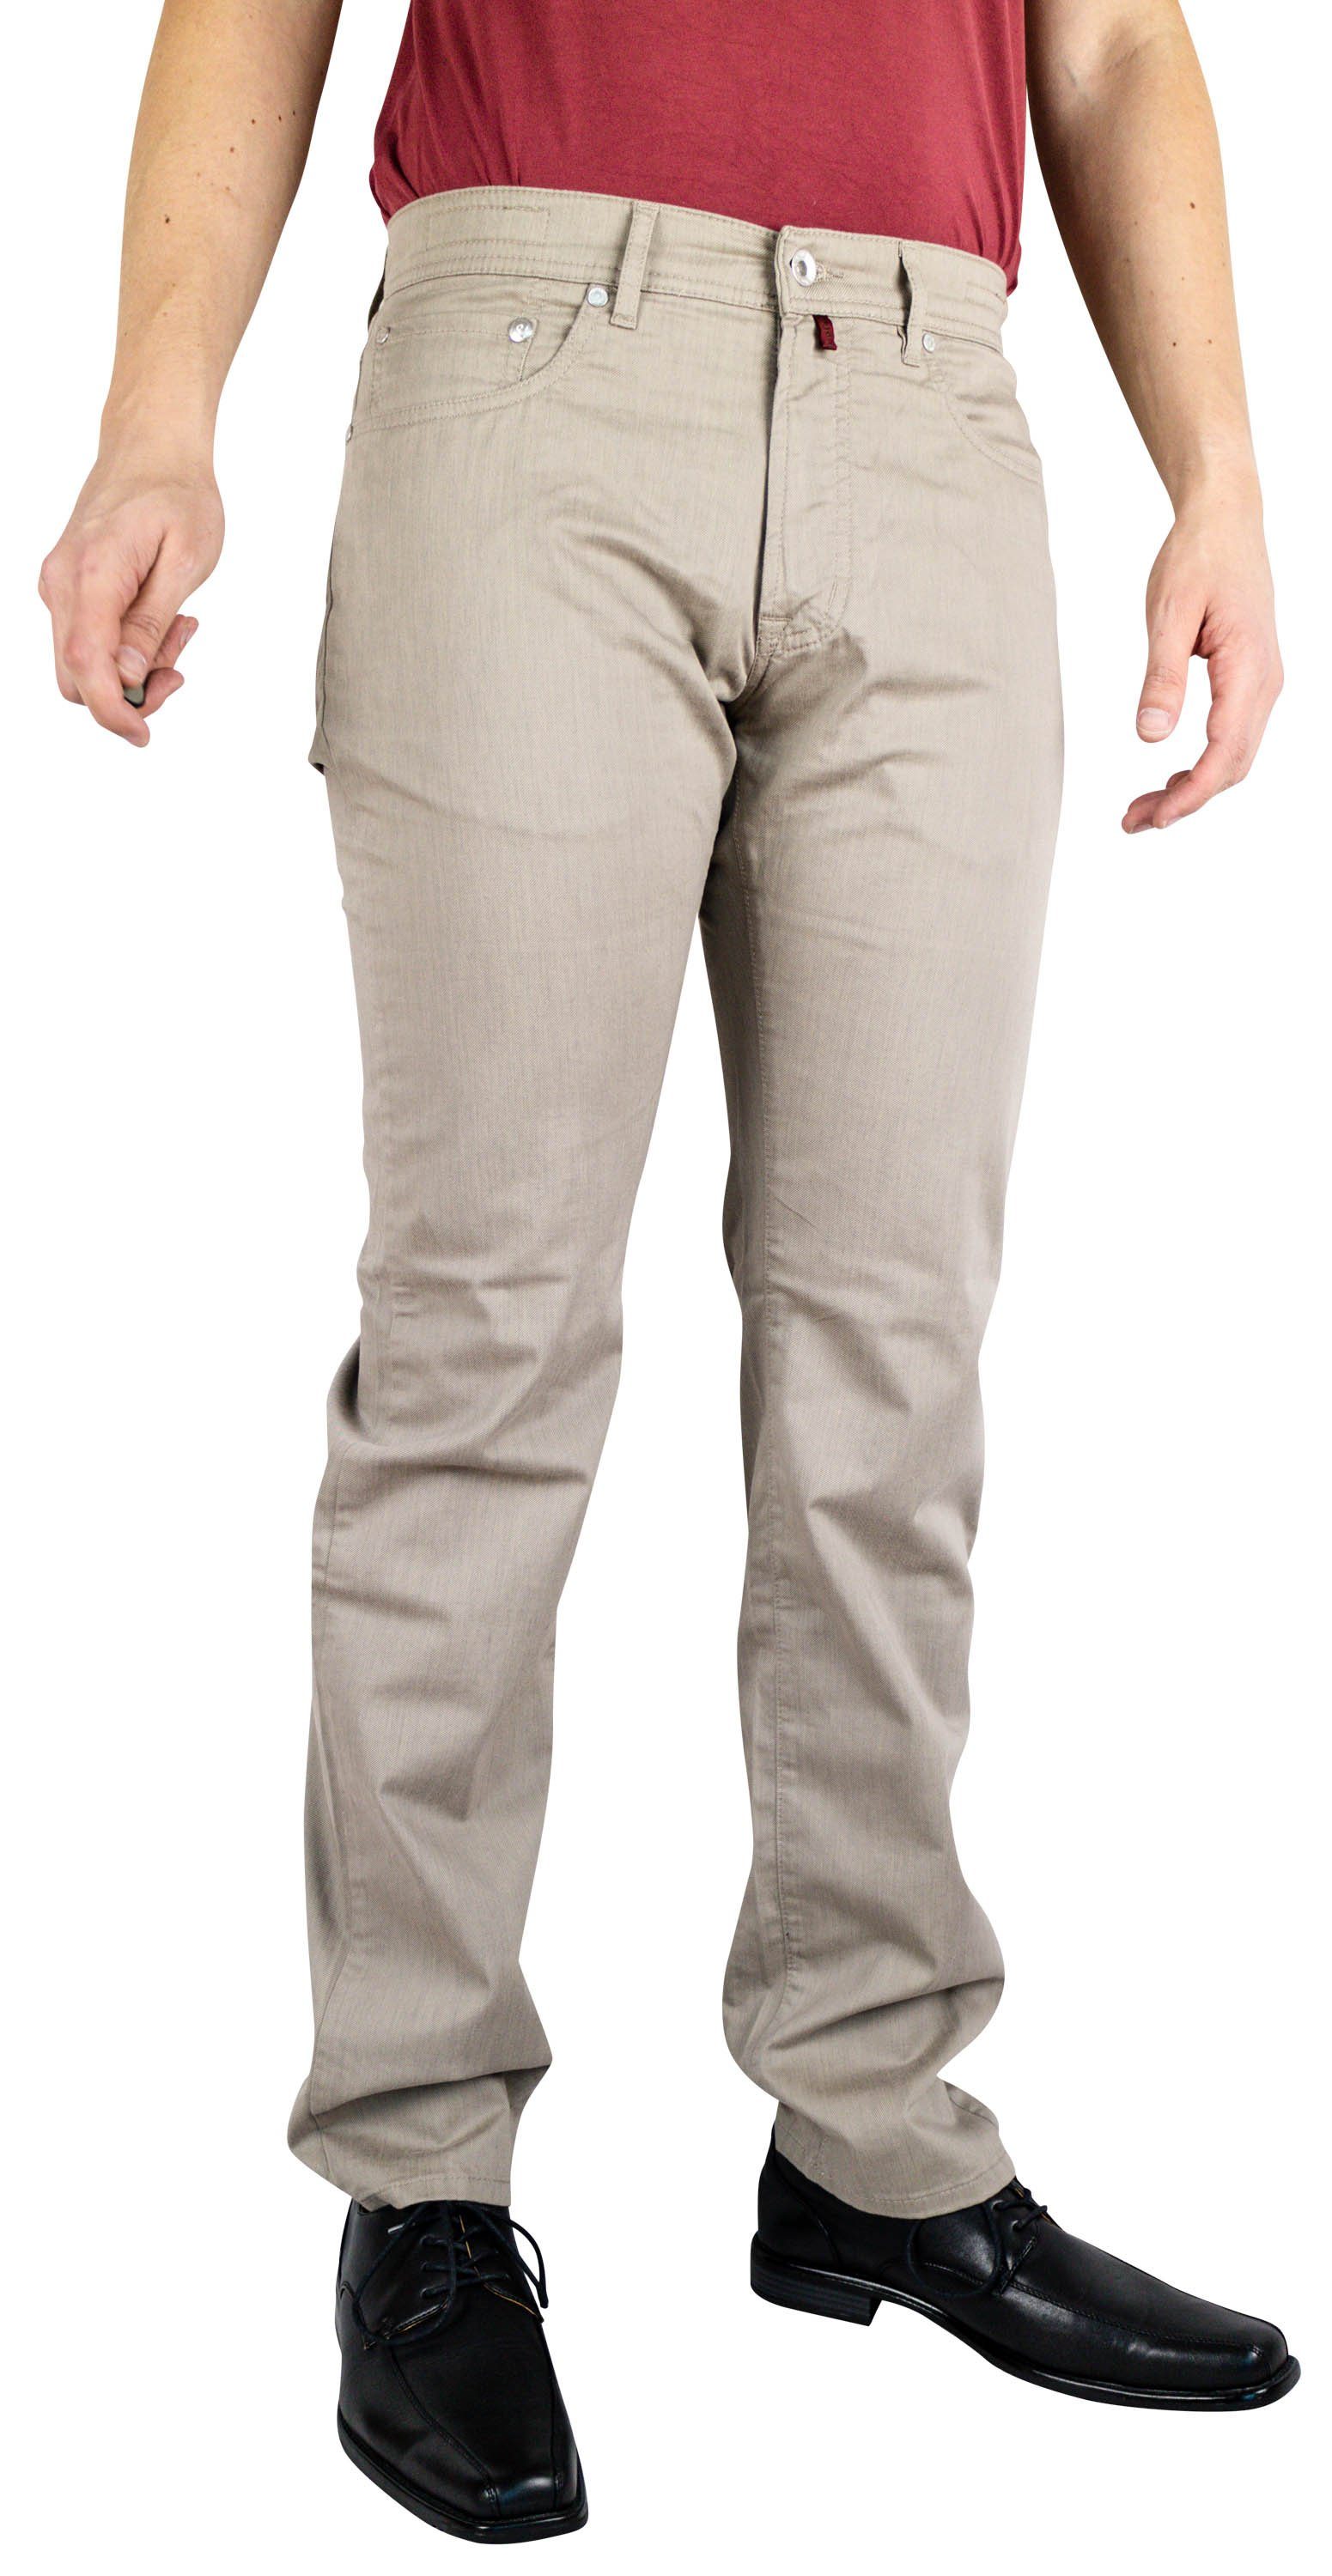 LYON sand Cardin 5-Pocket-Jeans 2280.25 beige PIERRE 3091 Pierre CARDIN